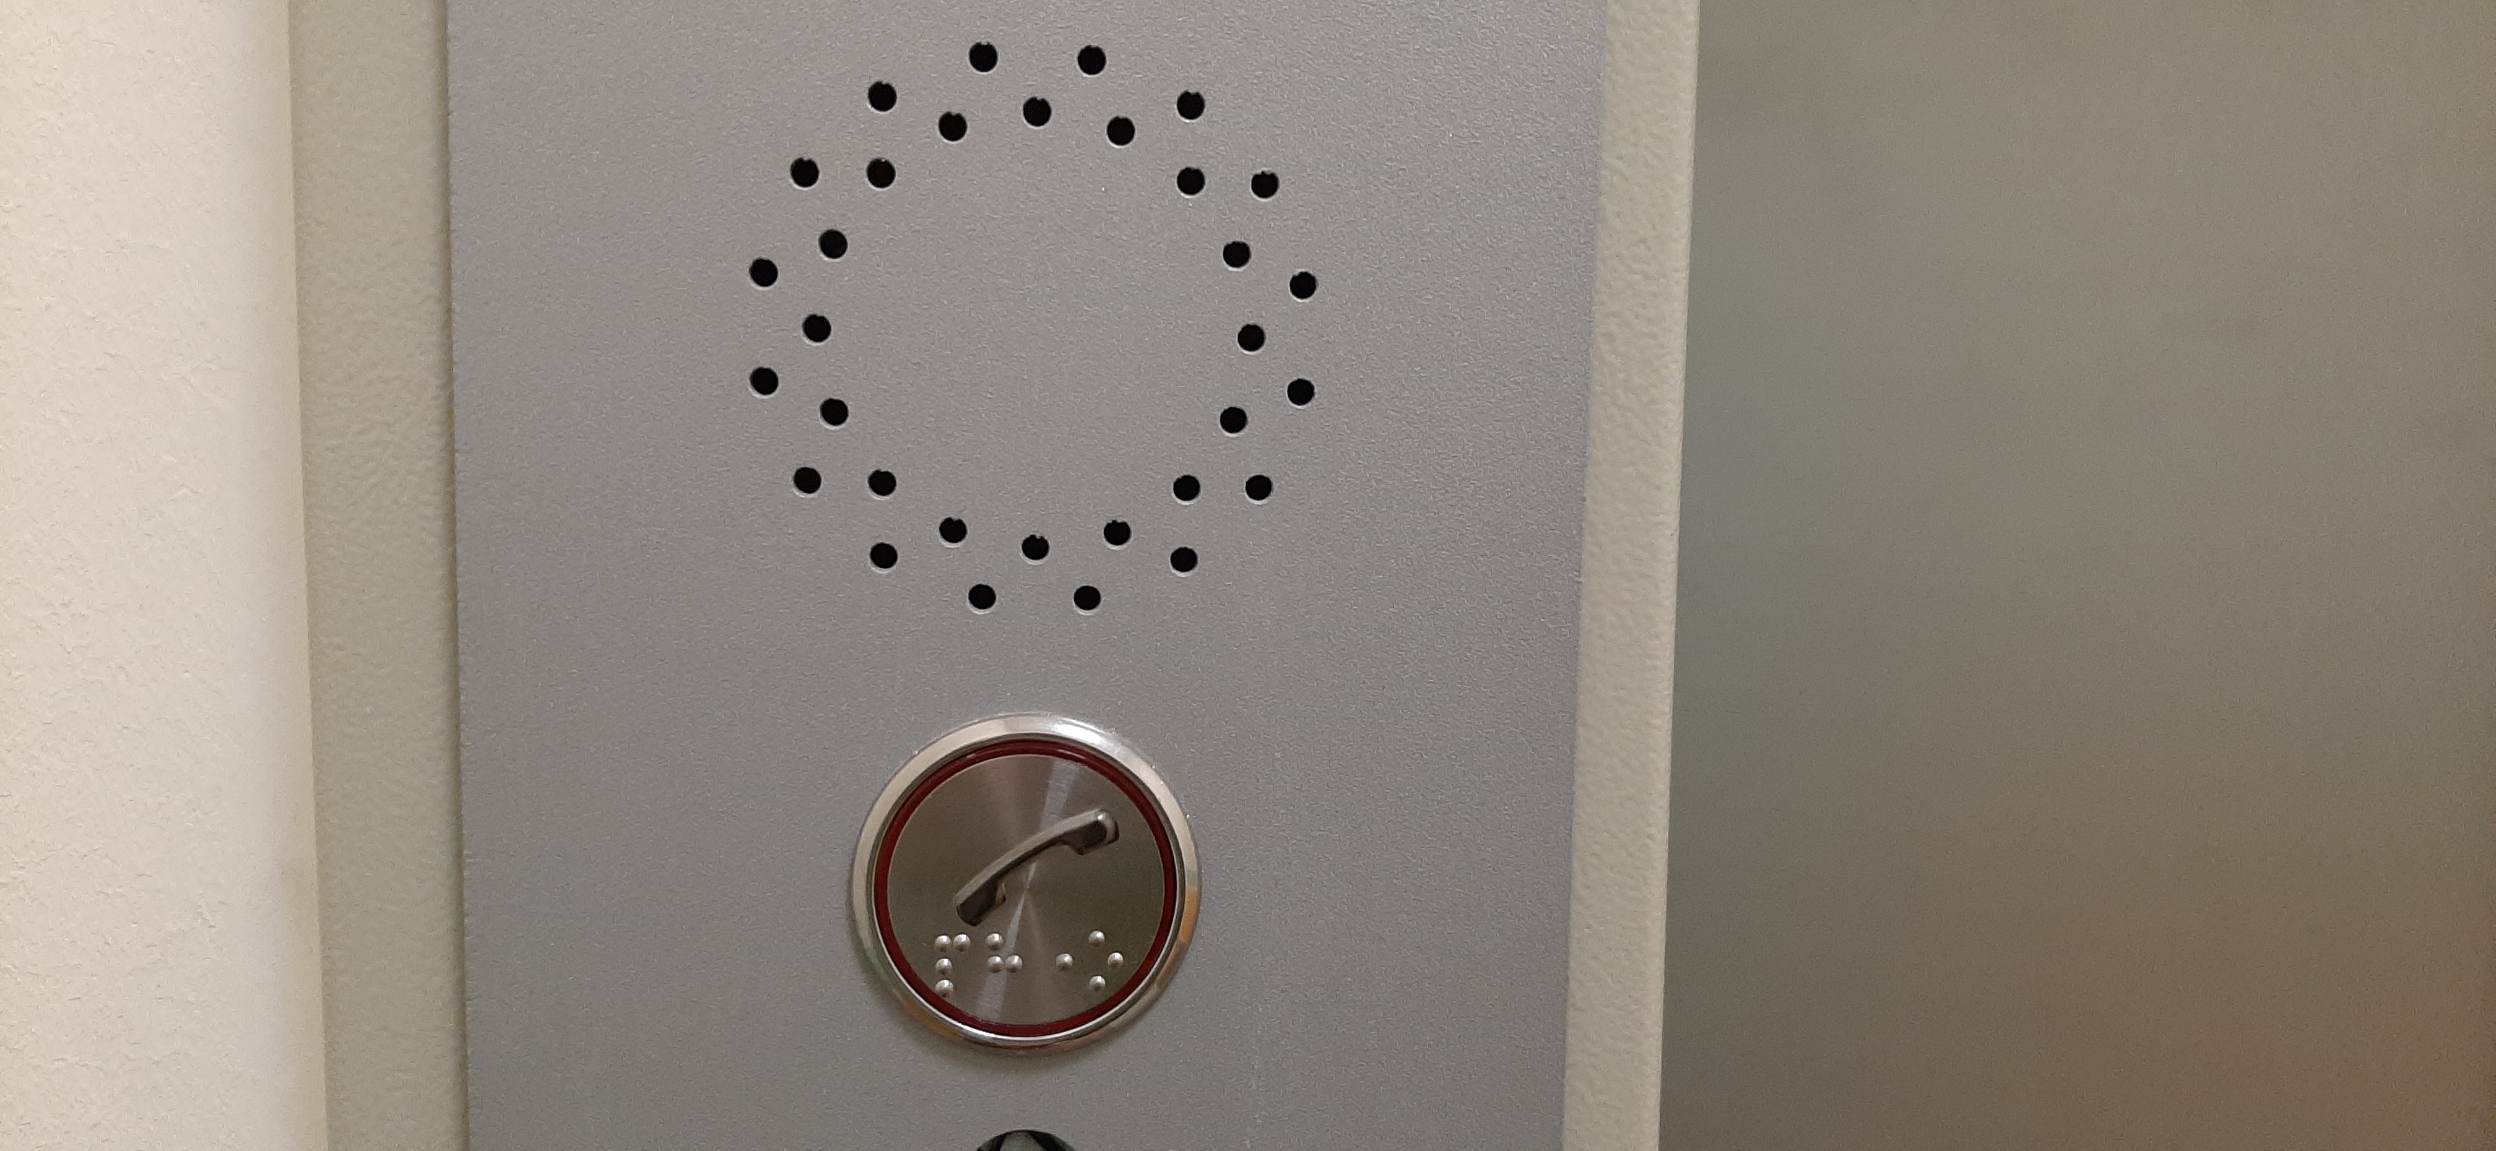 кнопка вызова в лифте, дублирующая азбука Брайля